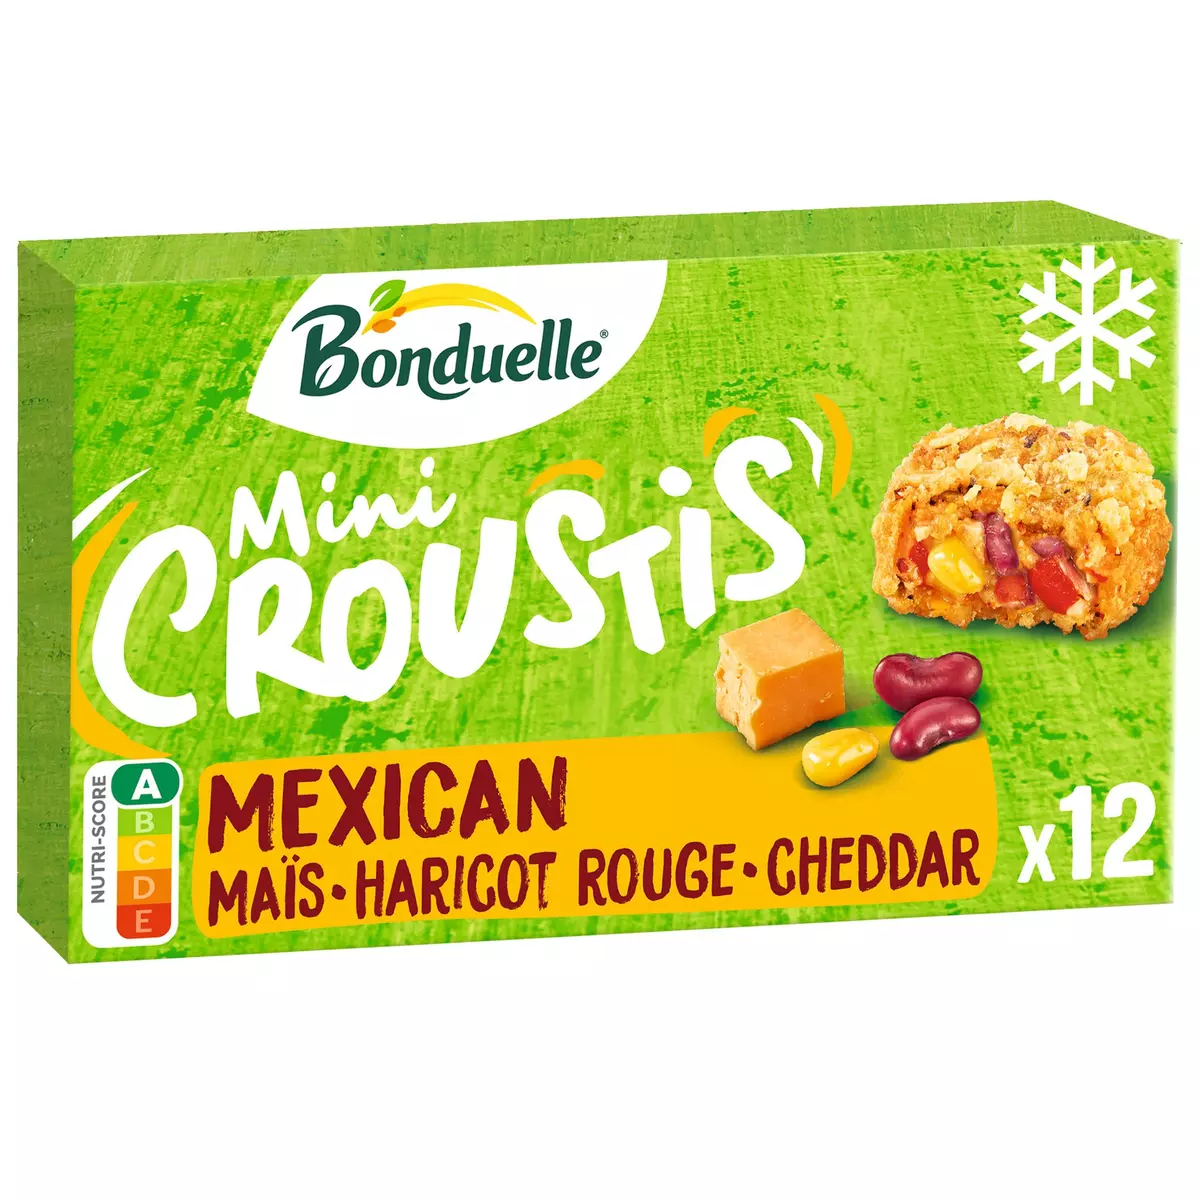 BONDUELLE Mini croustis mexican maïs haricot rouge cheddar 12 pièces 240g